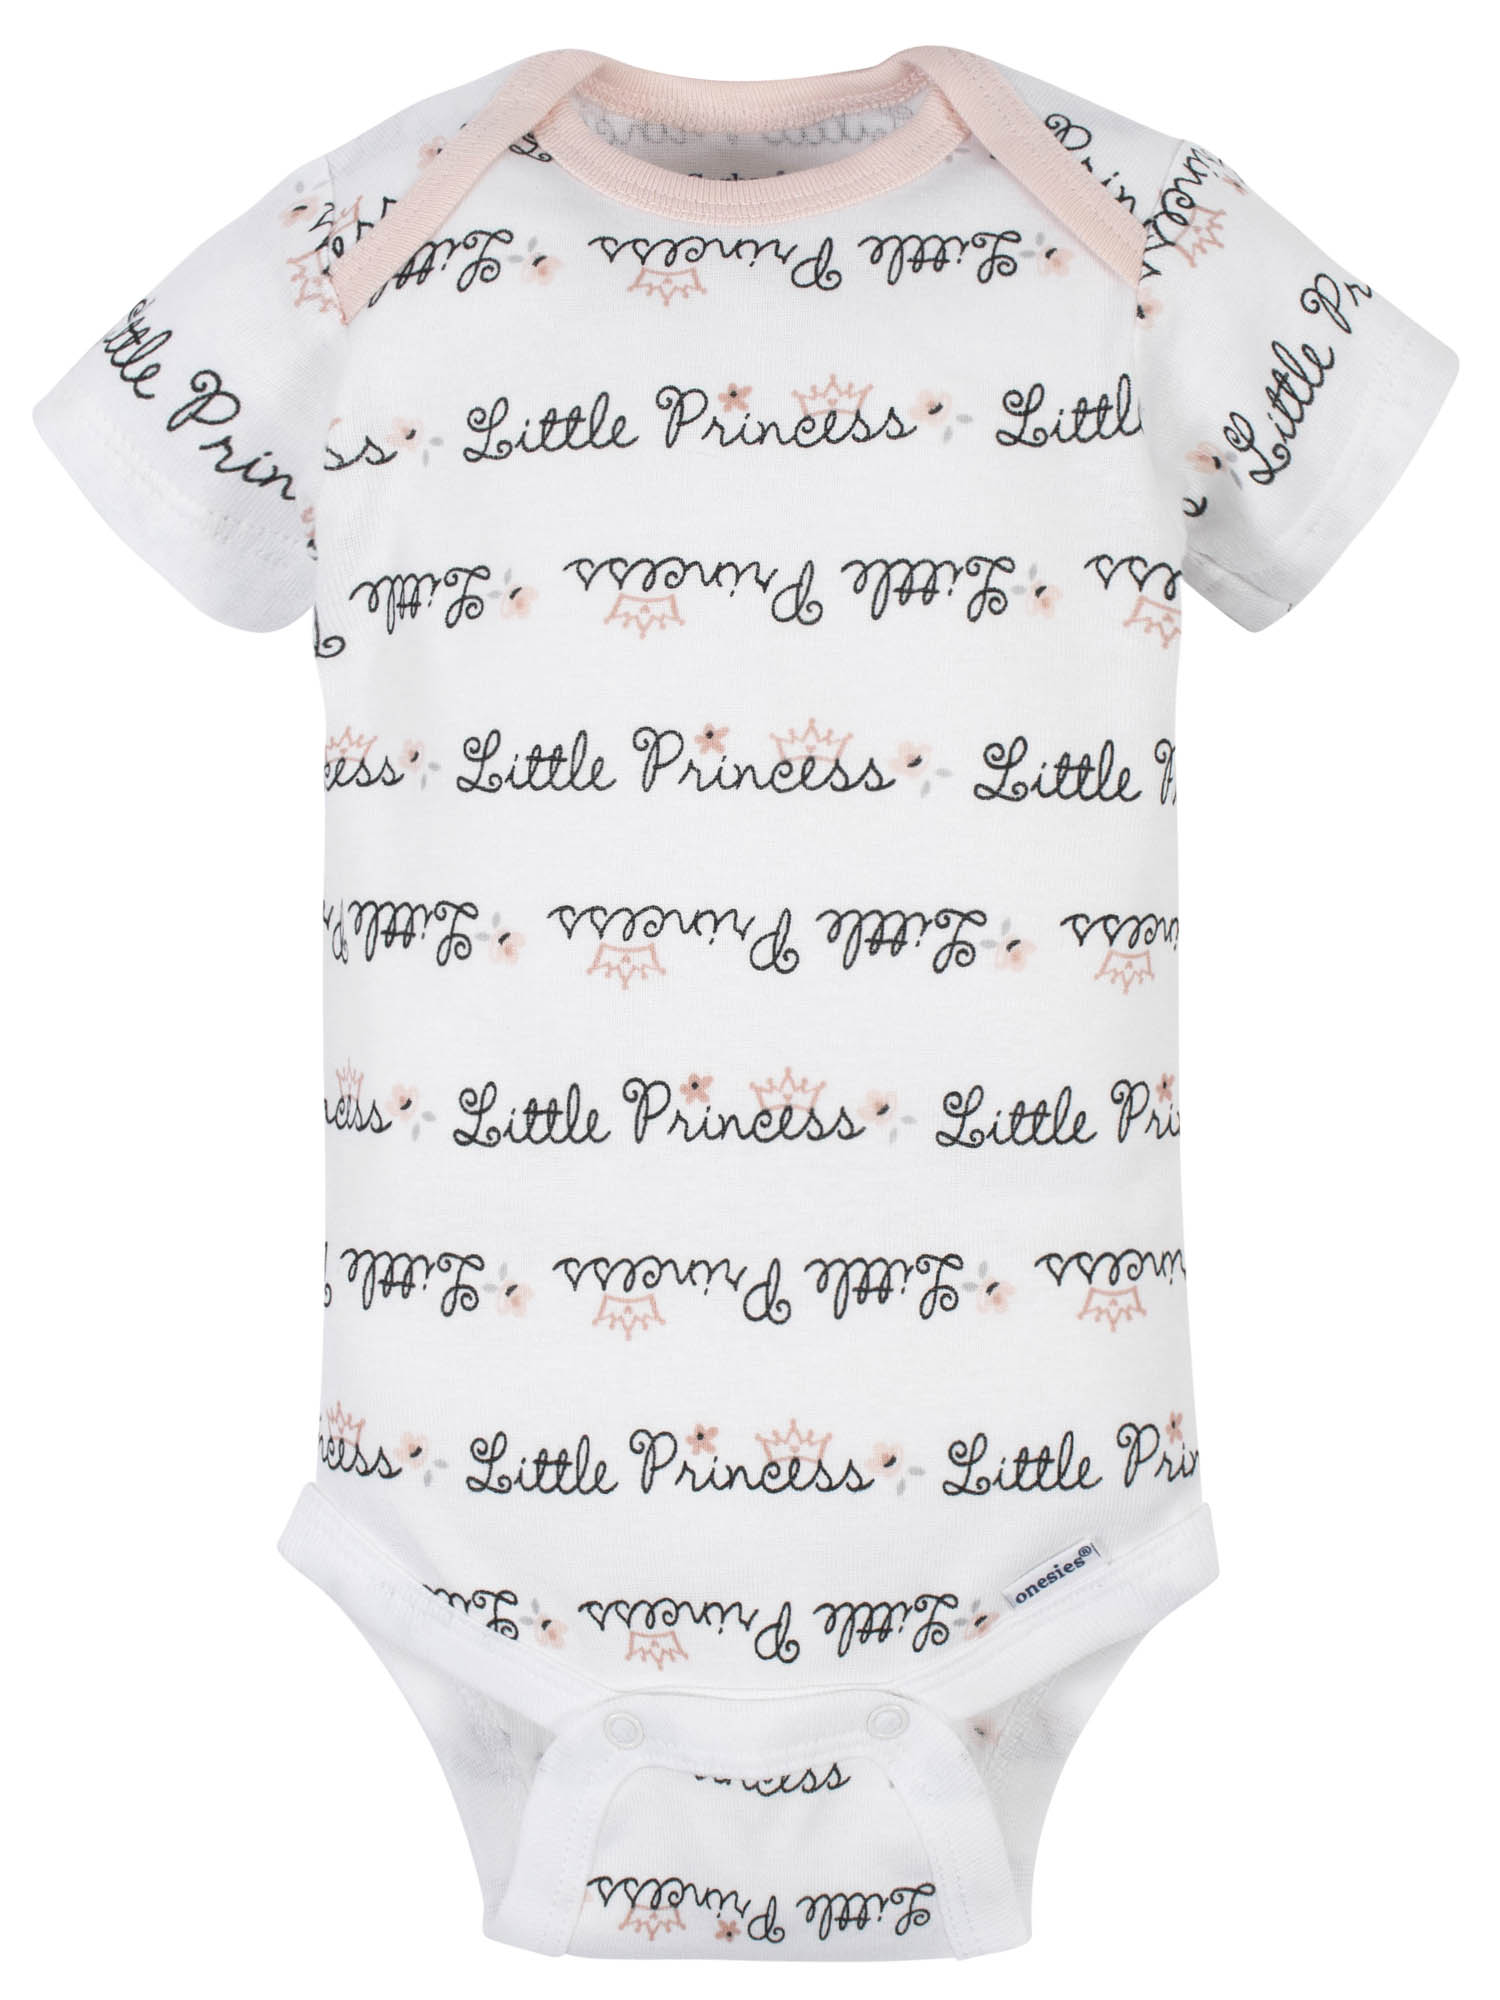 Gerber Baby Girl Short Sleeve Onesie Bodysuits, 5-Pack, Preemie-24 Months - image 3 of 12